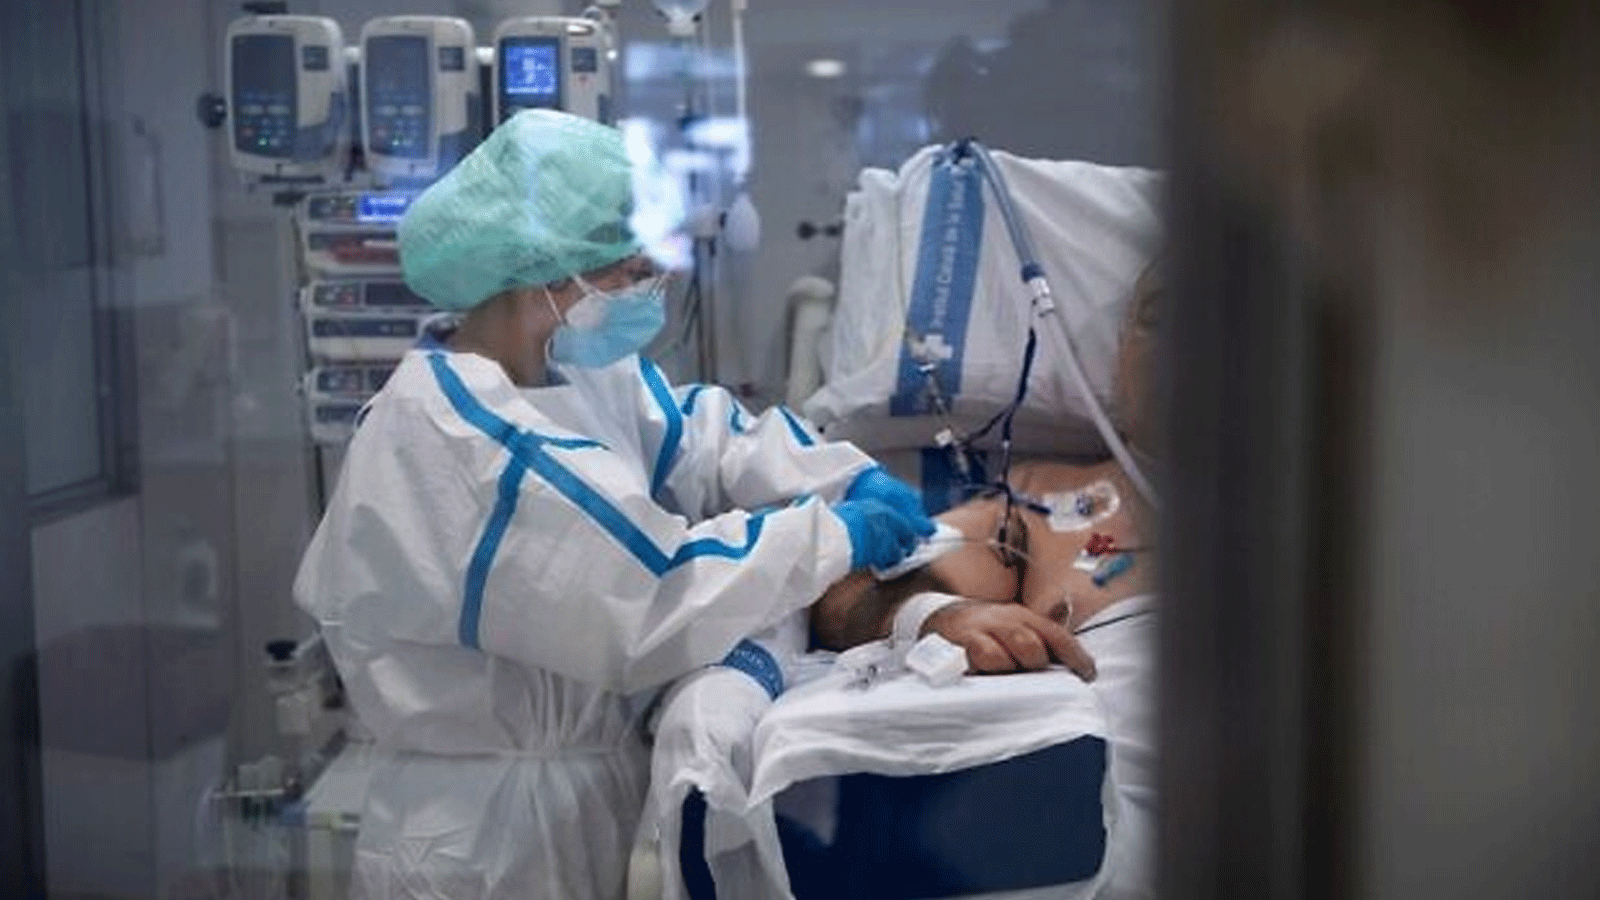 عامل رعاية صحية يعتني بمريض كوفيد -19، في وحدة العناية المركزة (ICU) في مستشفى جامعة بيلفيج في برشلونة في 19 كانون الثاني\يناير 2022